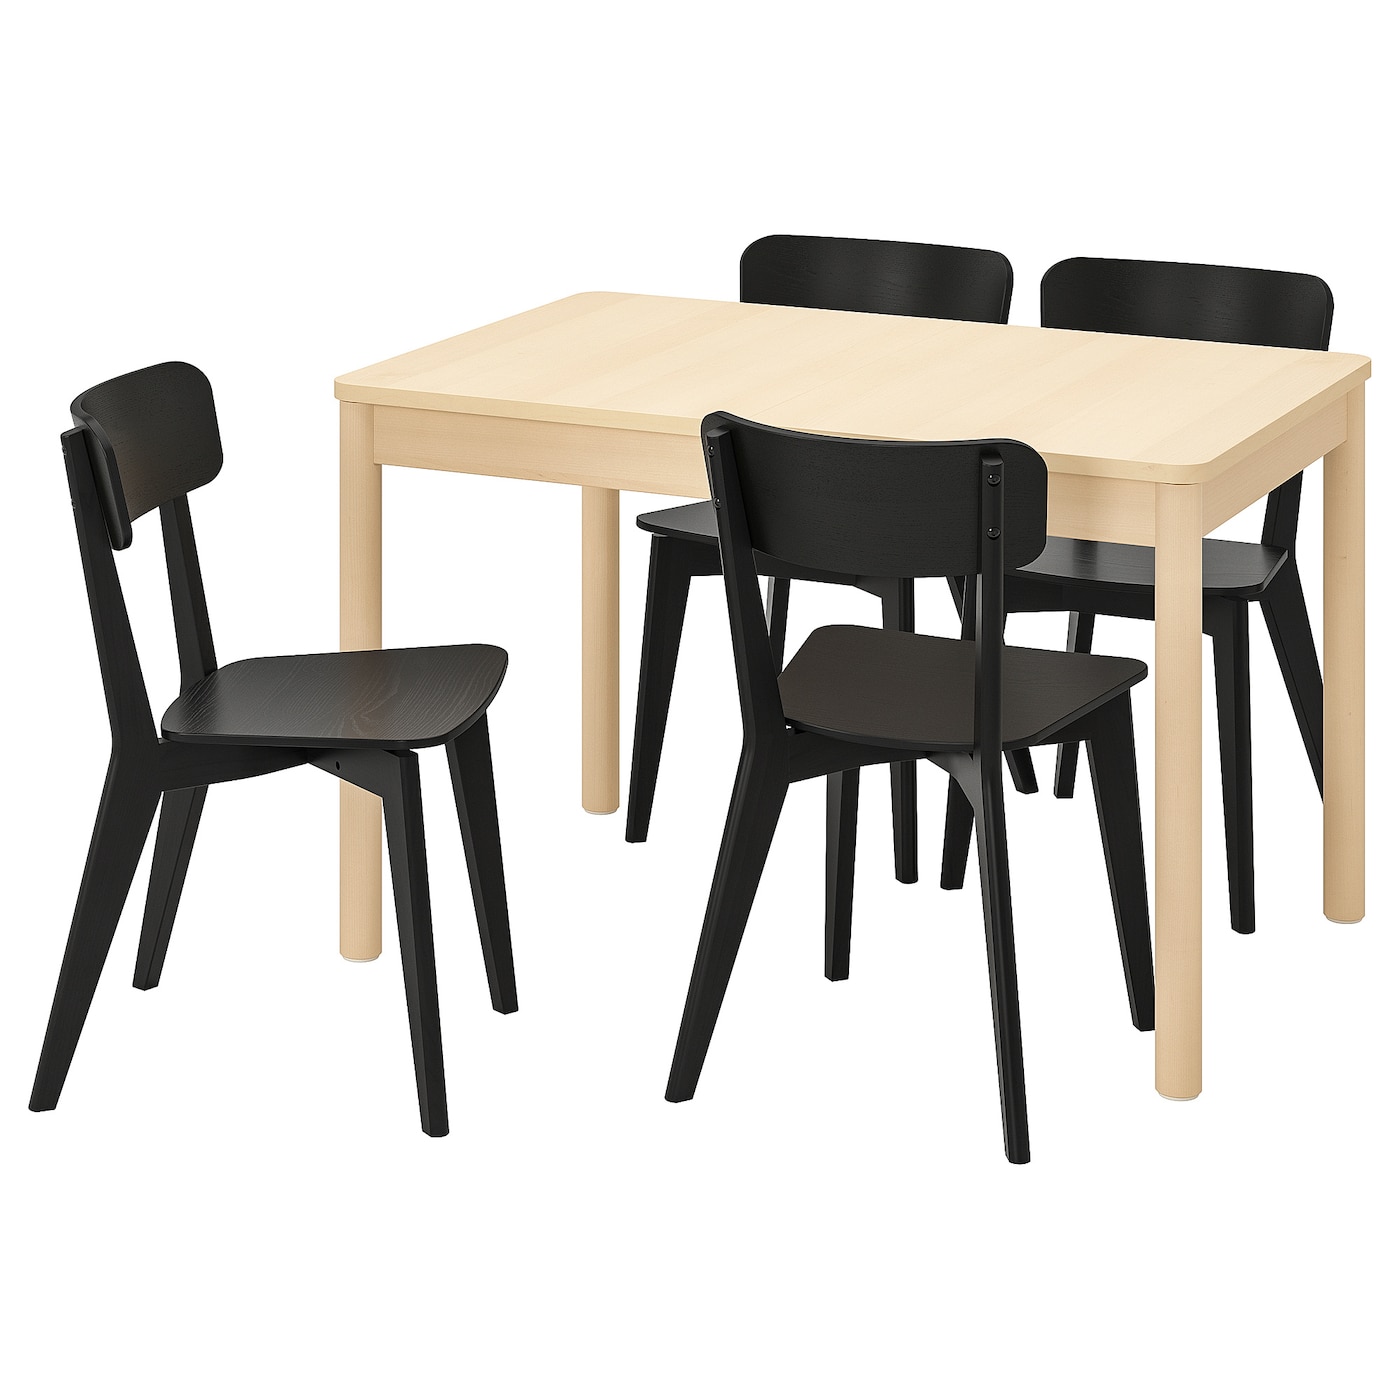 RÖNNINGE / LISABO Tisch und 4 Stühle  -  - Möbel Ideen für dein Zuhause von Home Trends. Möbel Trends von Social Media Influencer für dein Skandi Zuhause.